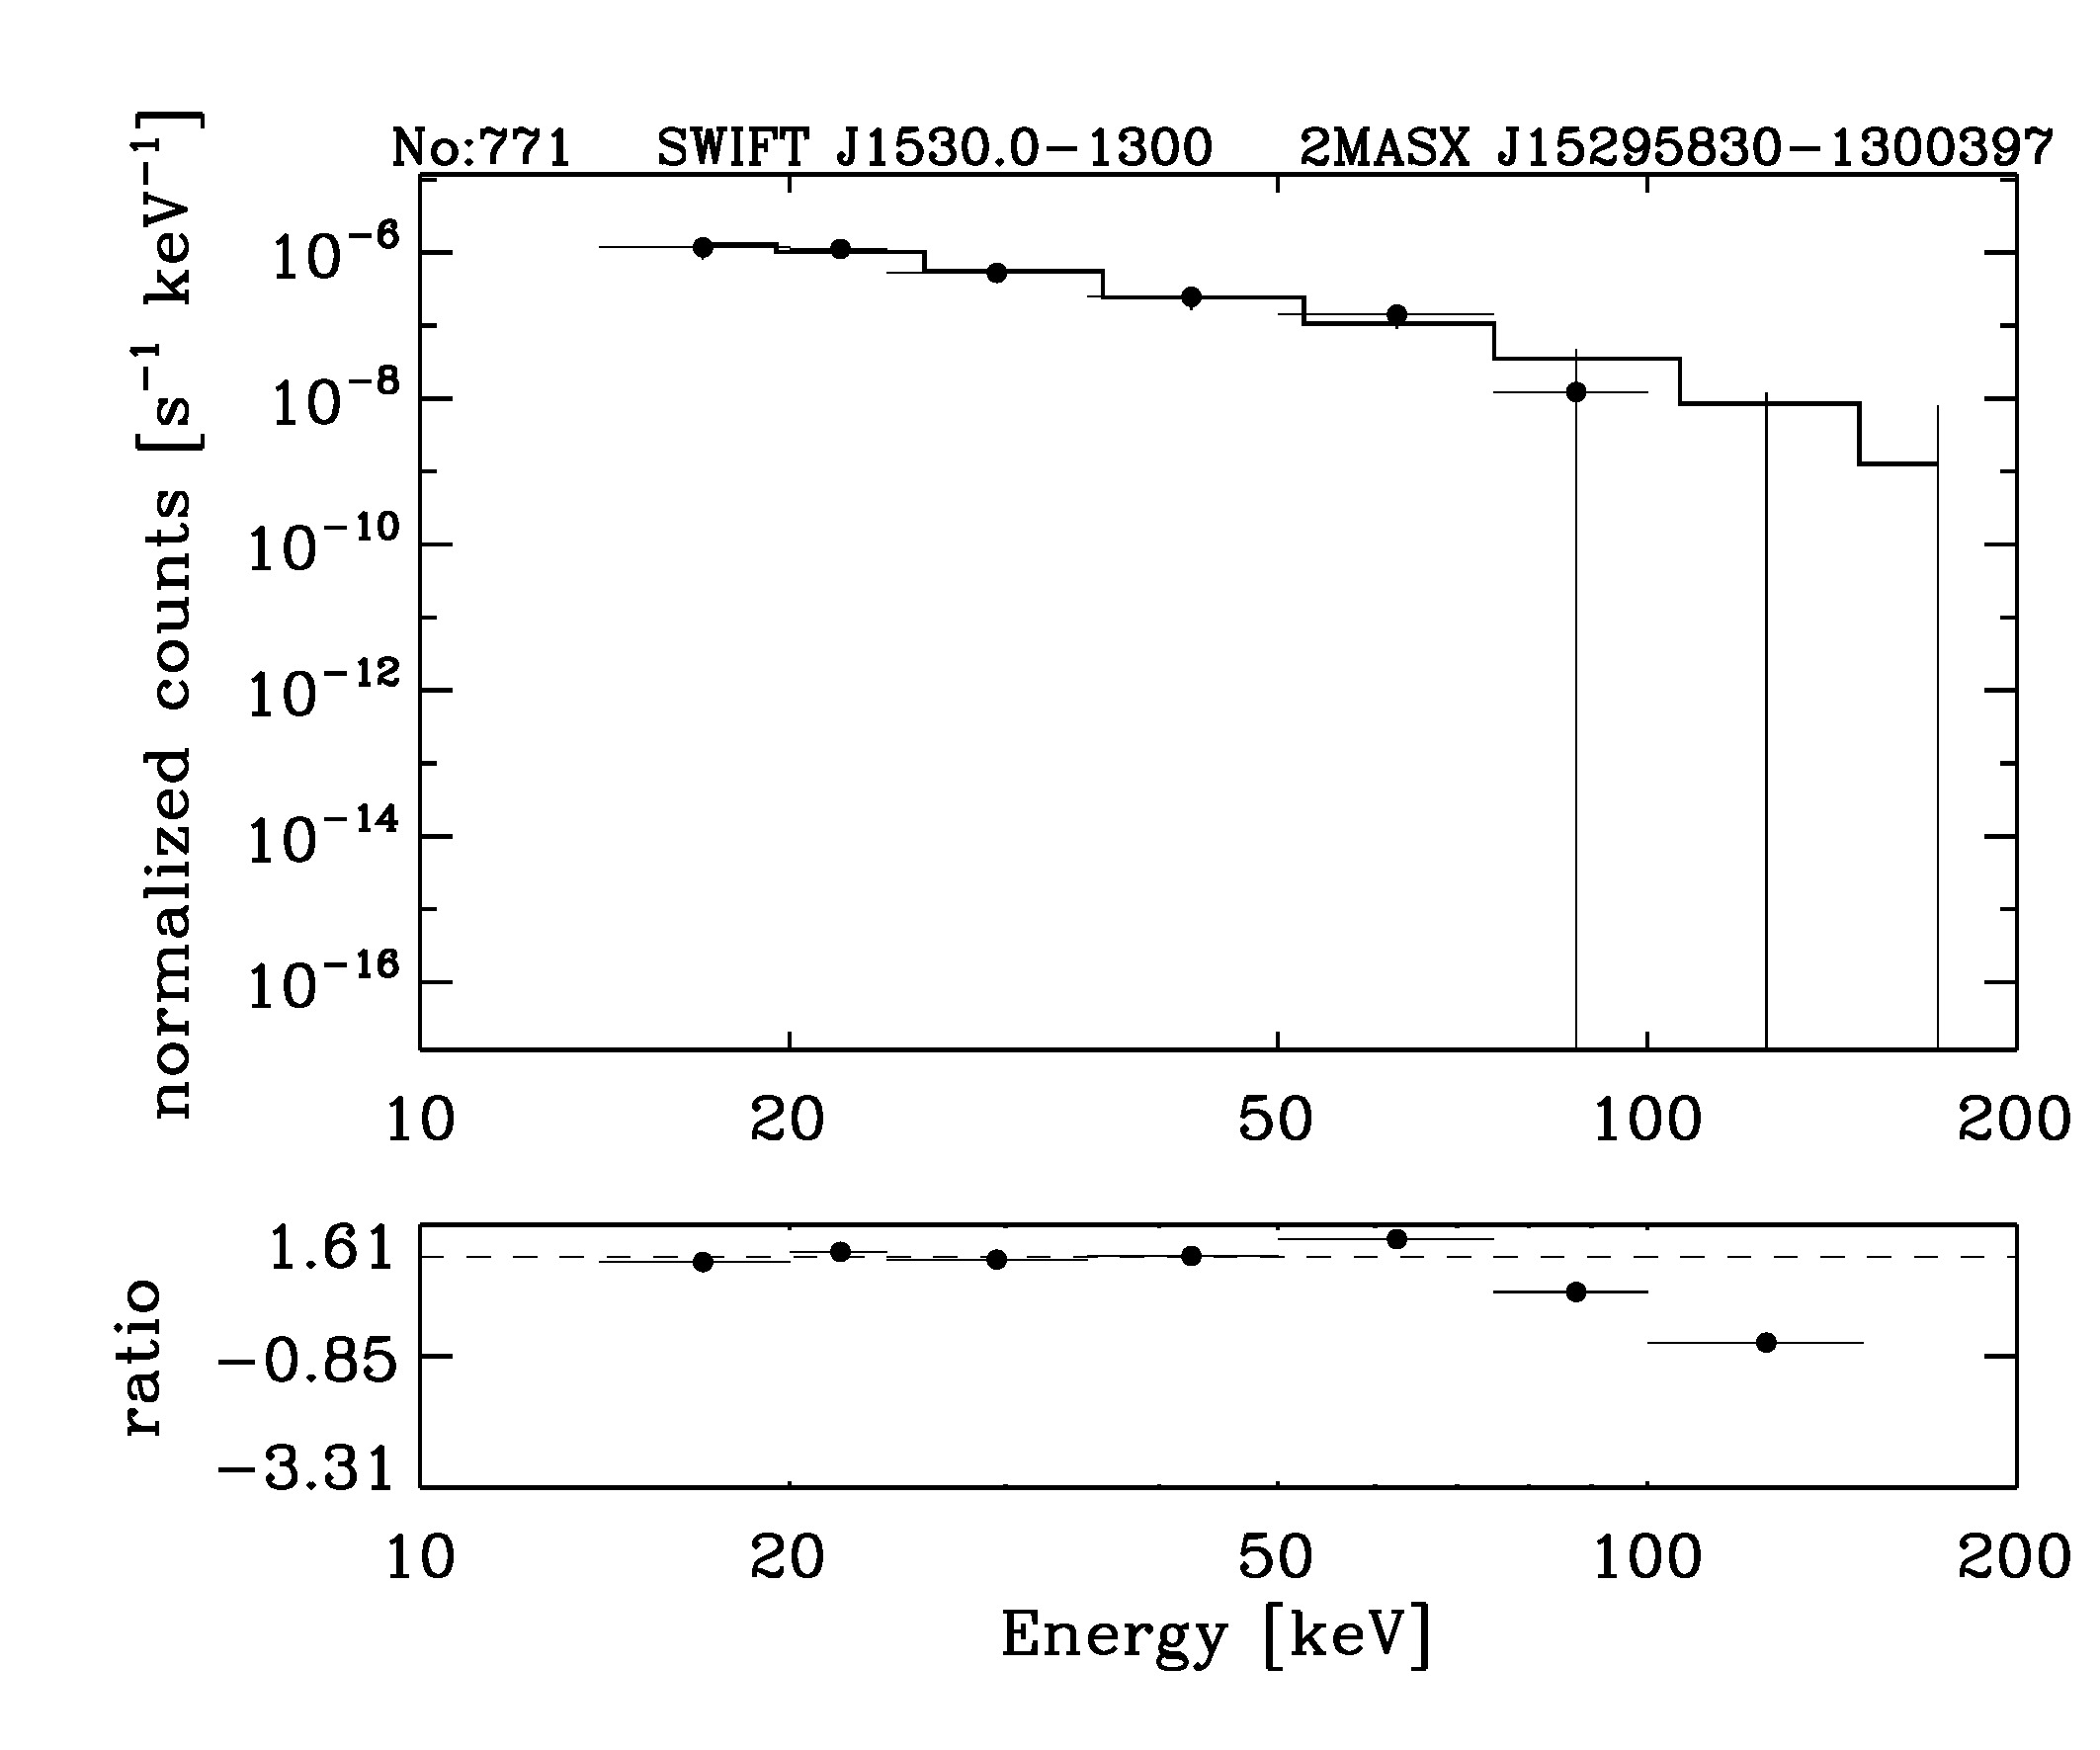 BAT Spectrum for SWIFT J1530.0-1300